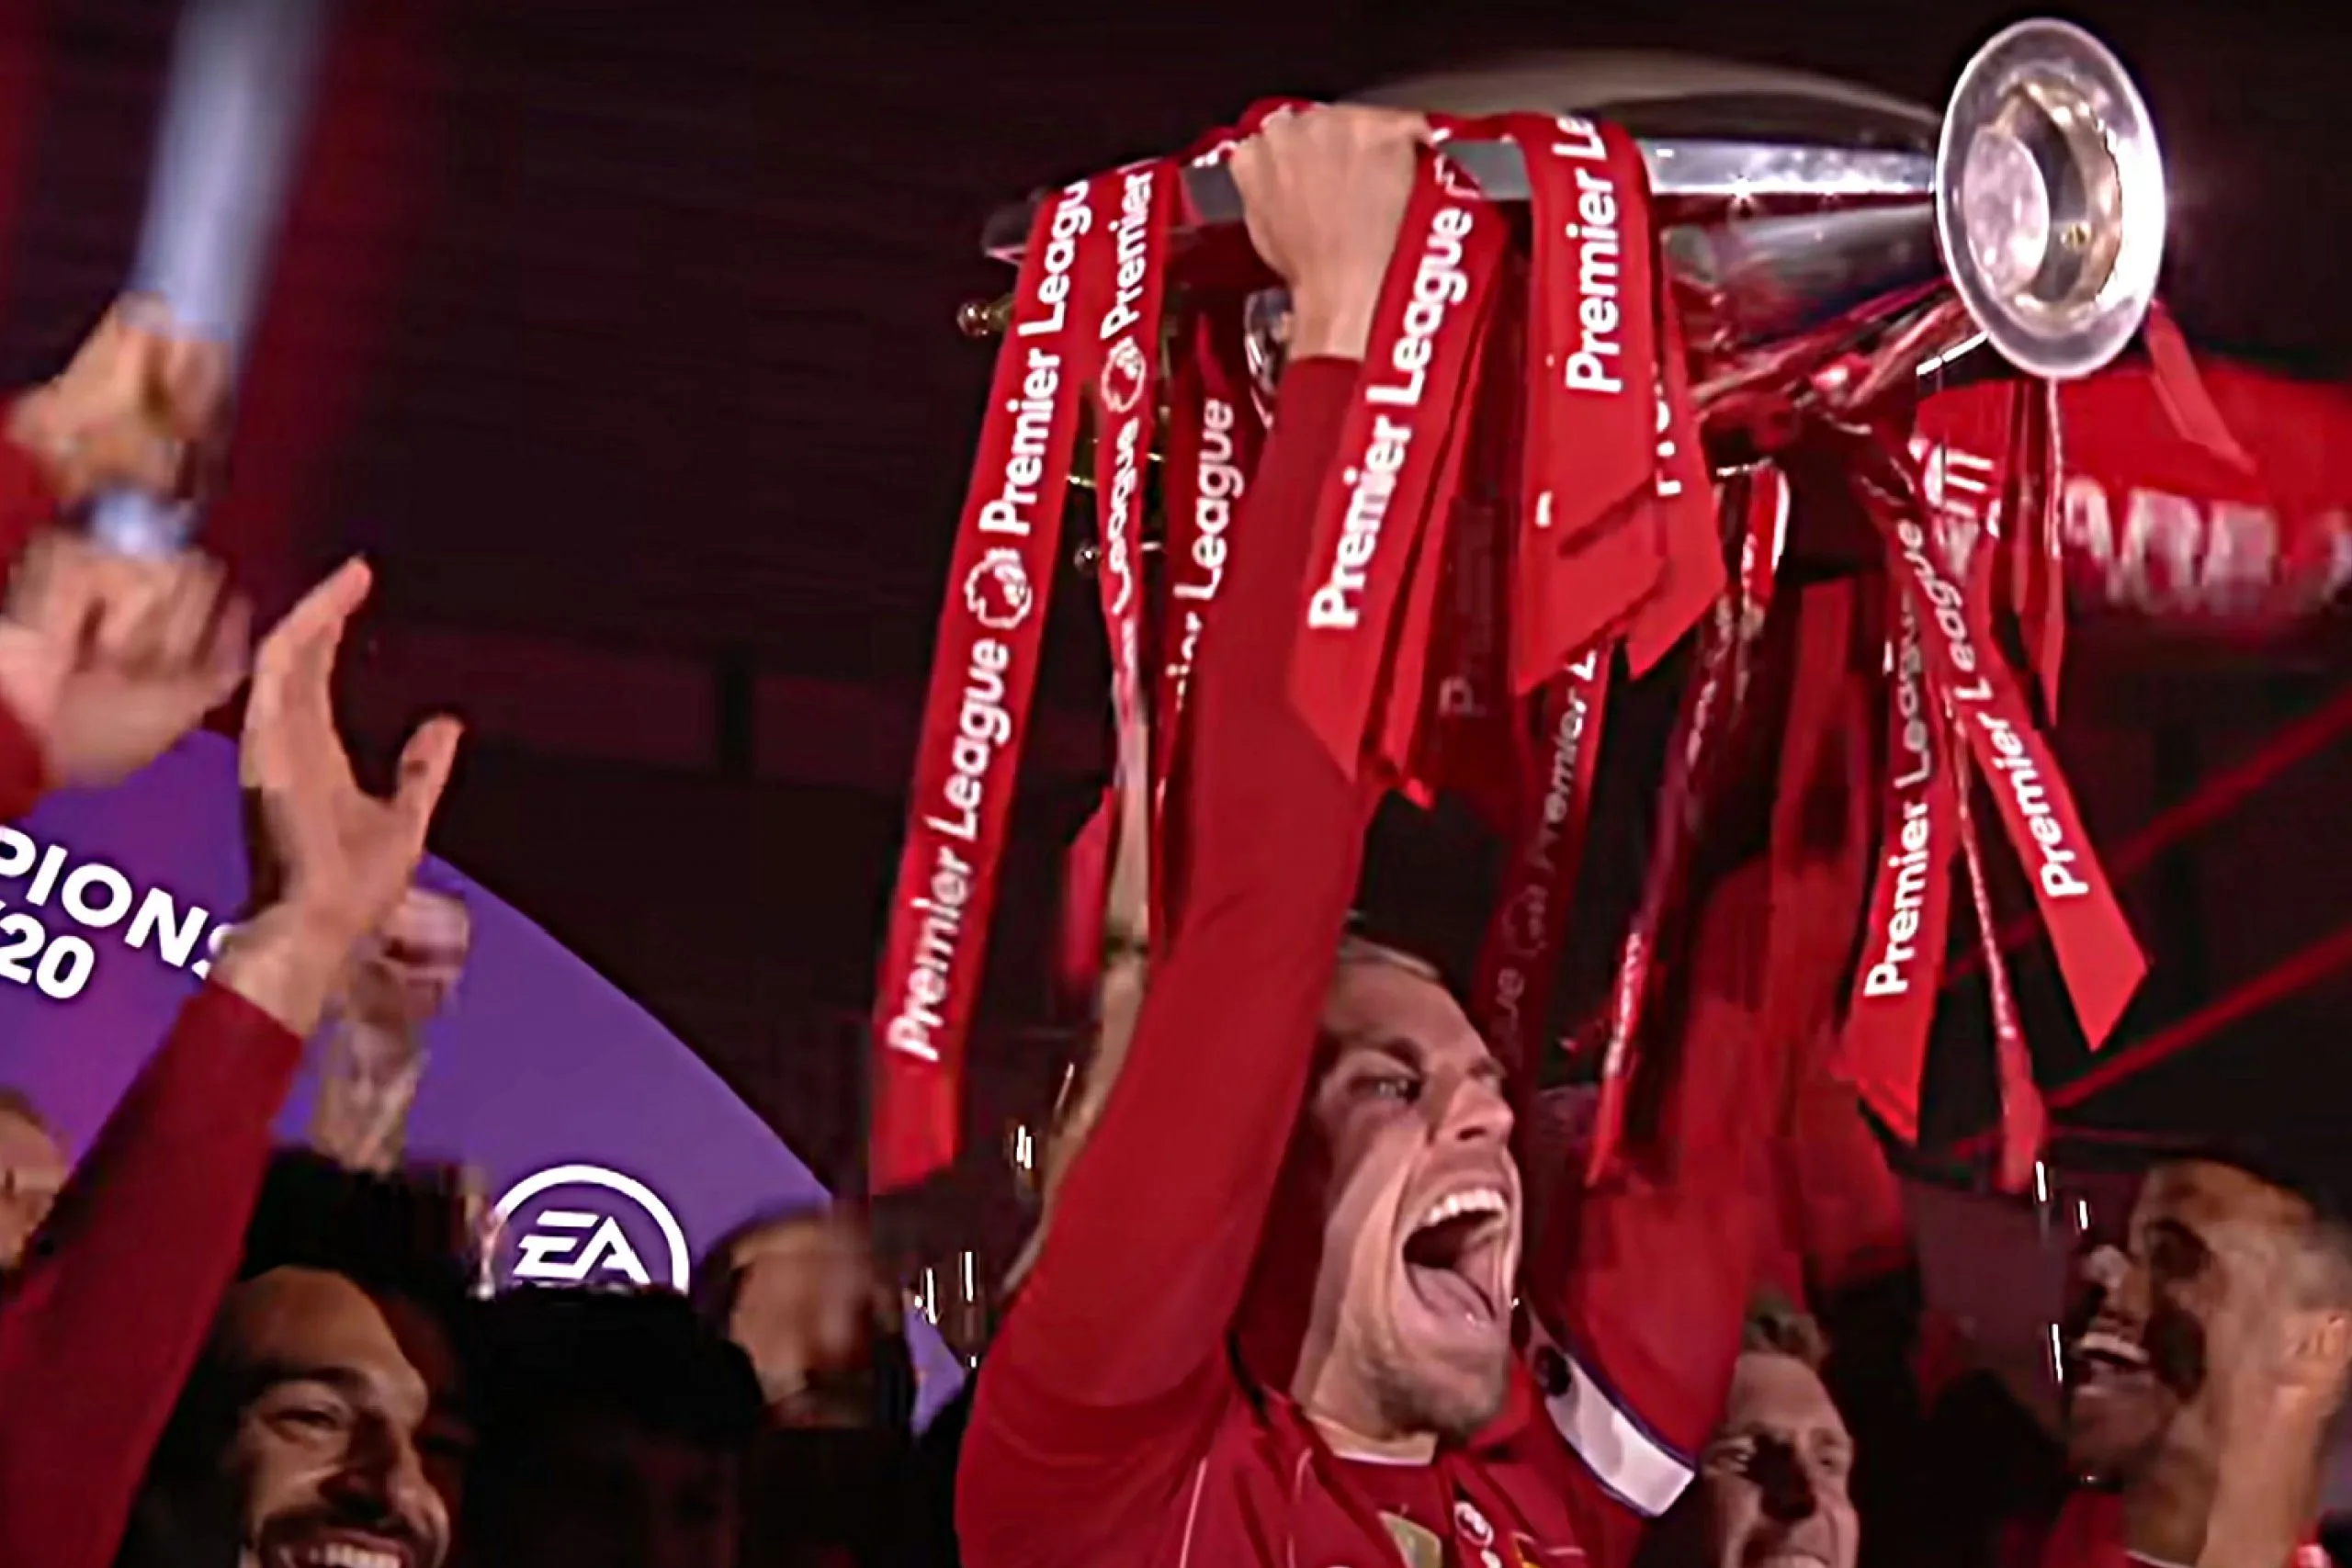 Liverpool captain Jordan Henderson lifting the Premier League trophy